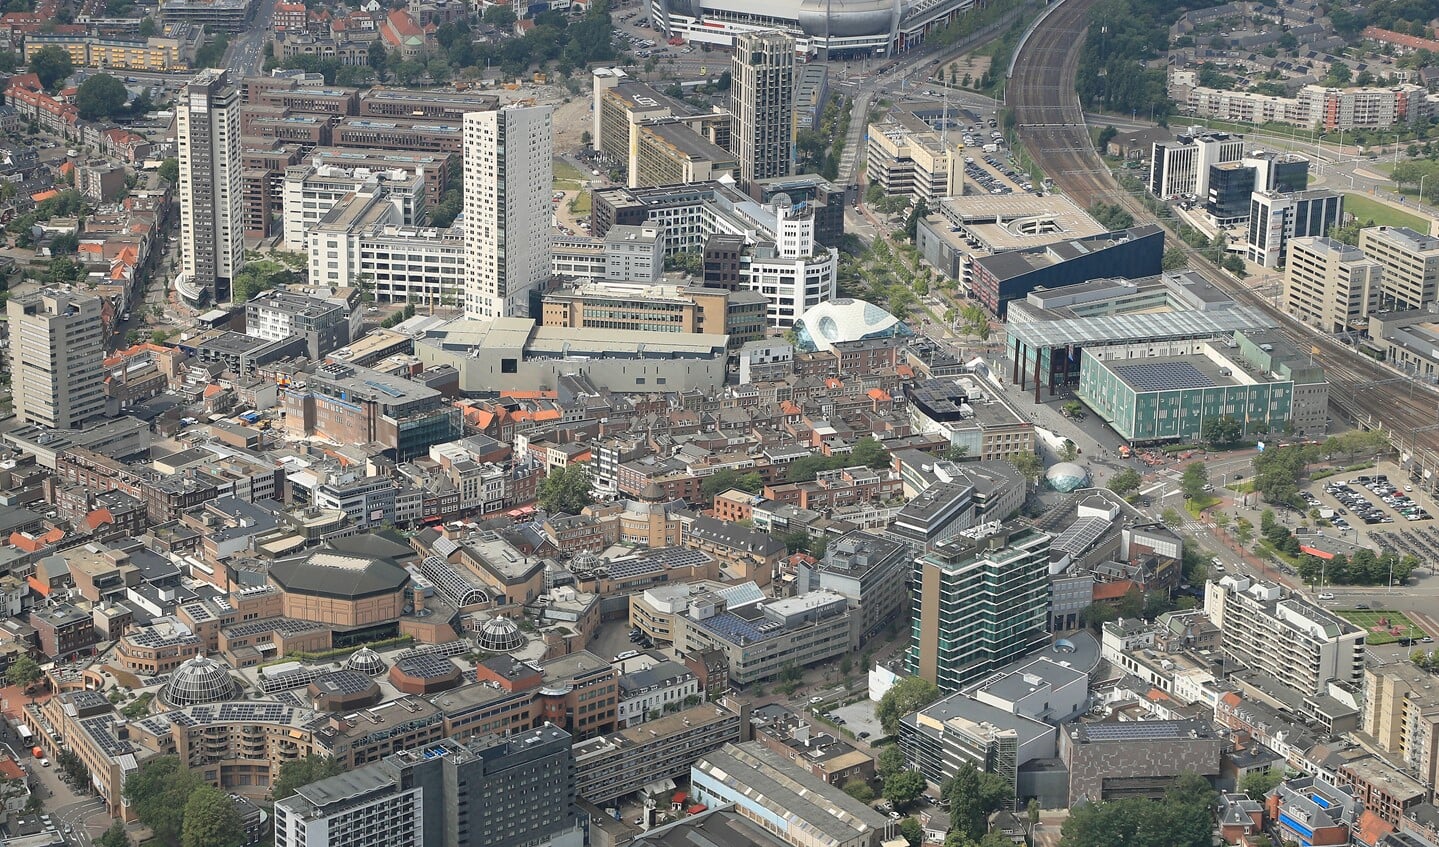 Plaatje van het centrum van Eindhoven vanuit de lucht bekeken, met bovenaan in het midden het Philips Stadion. FOTO: Ronald Otter.